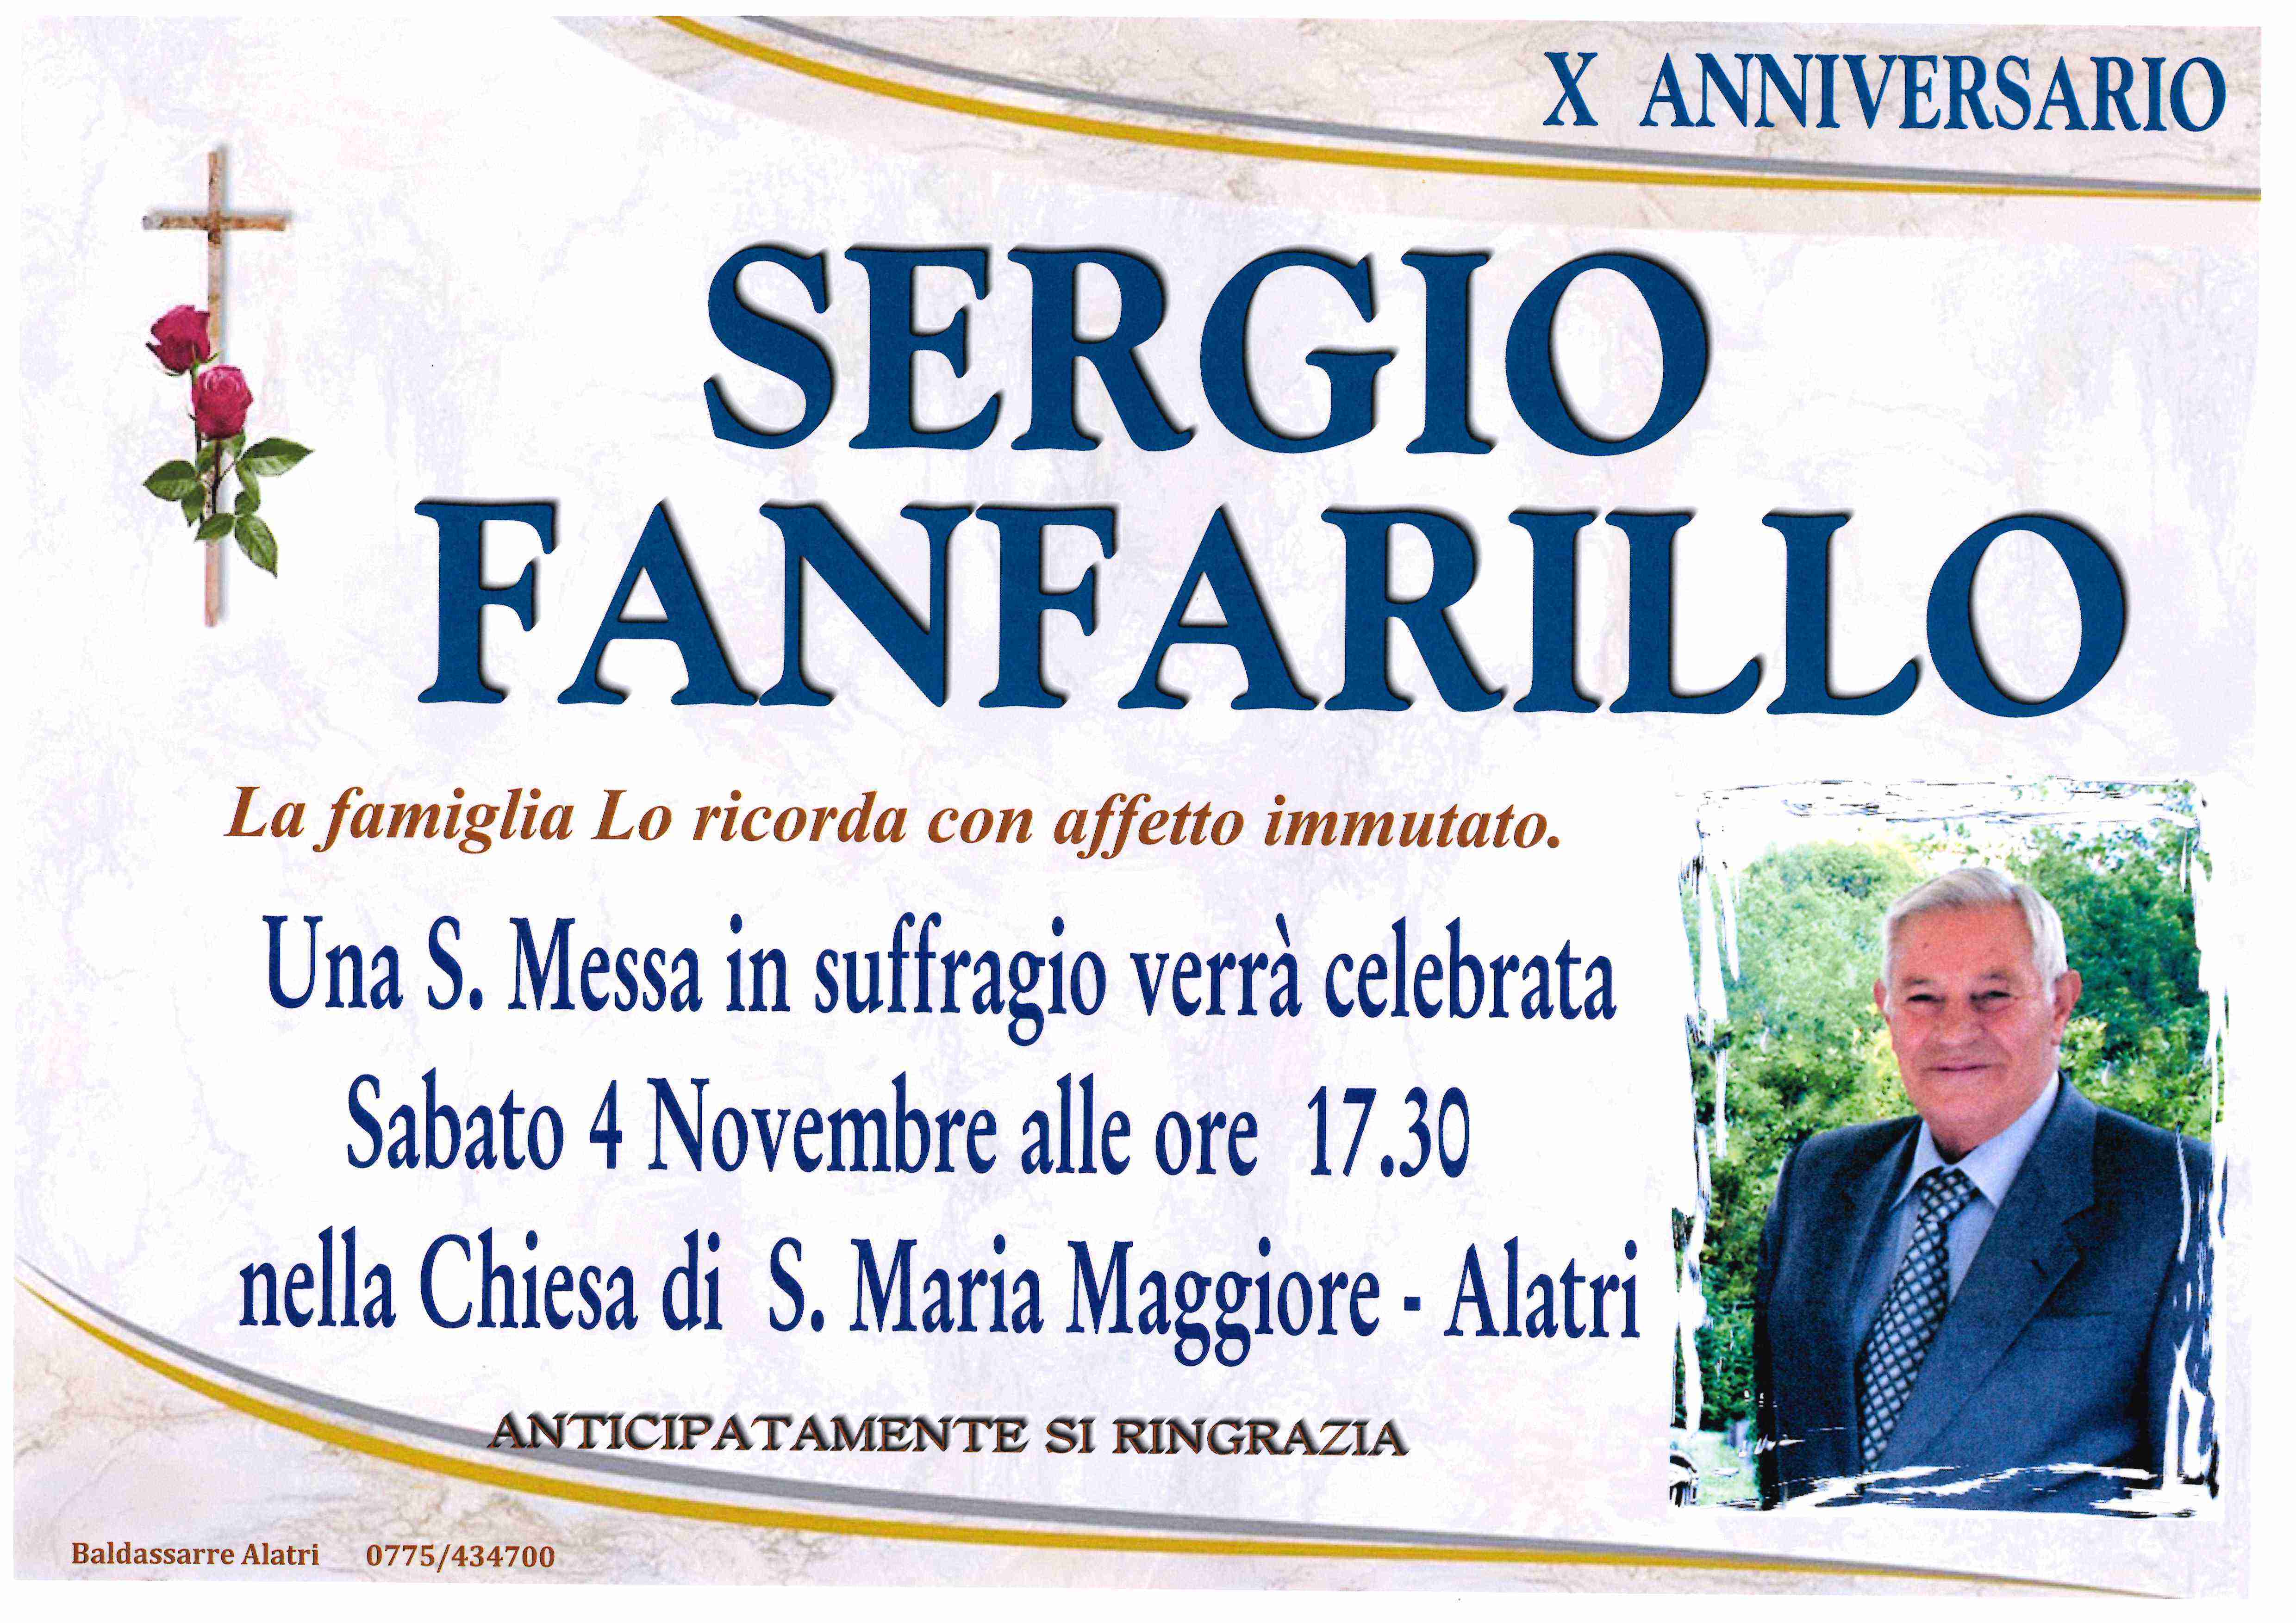 Sergio Fanfarillo